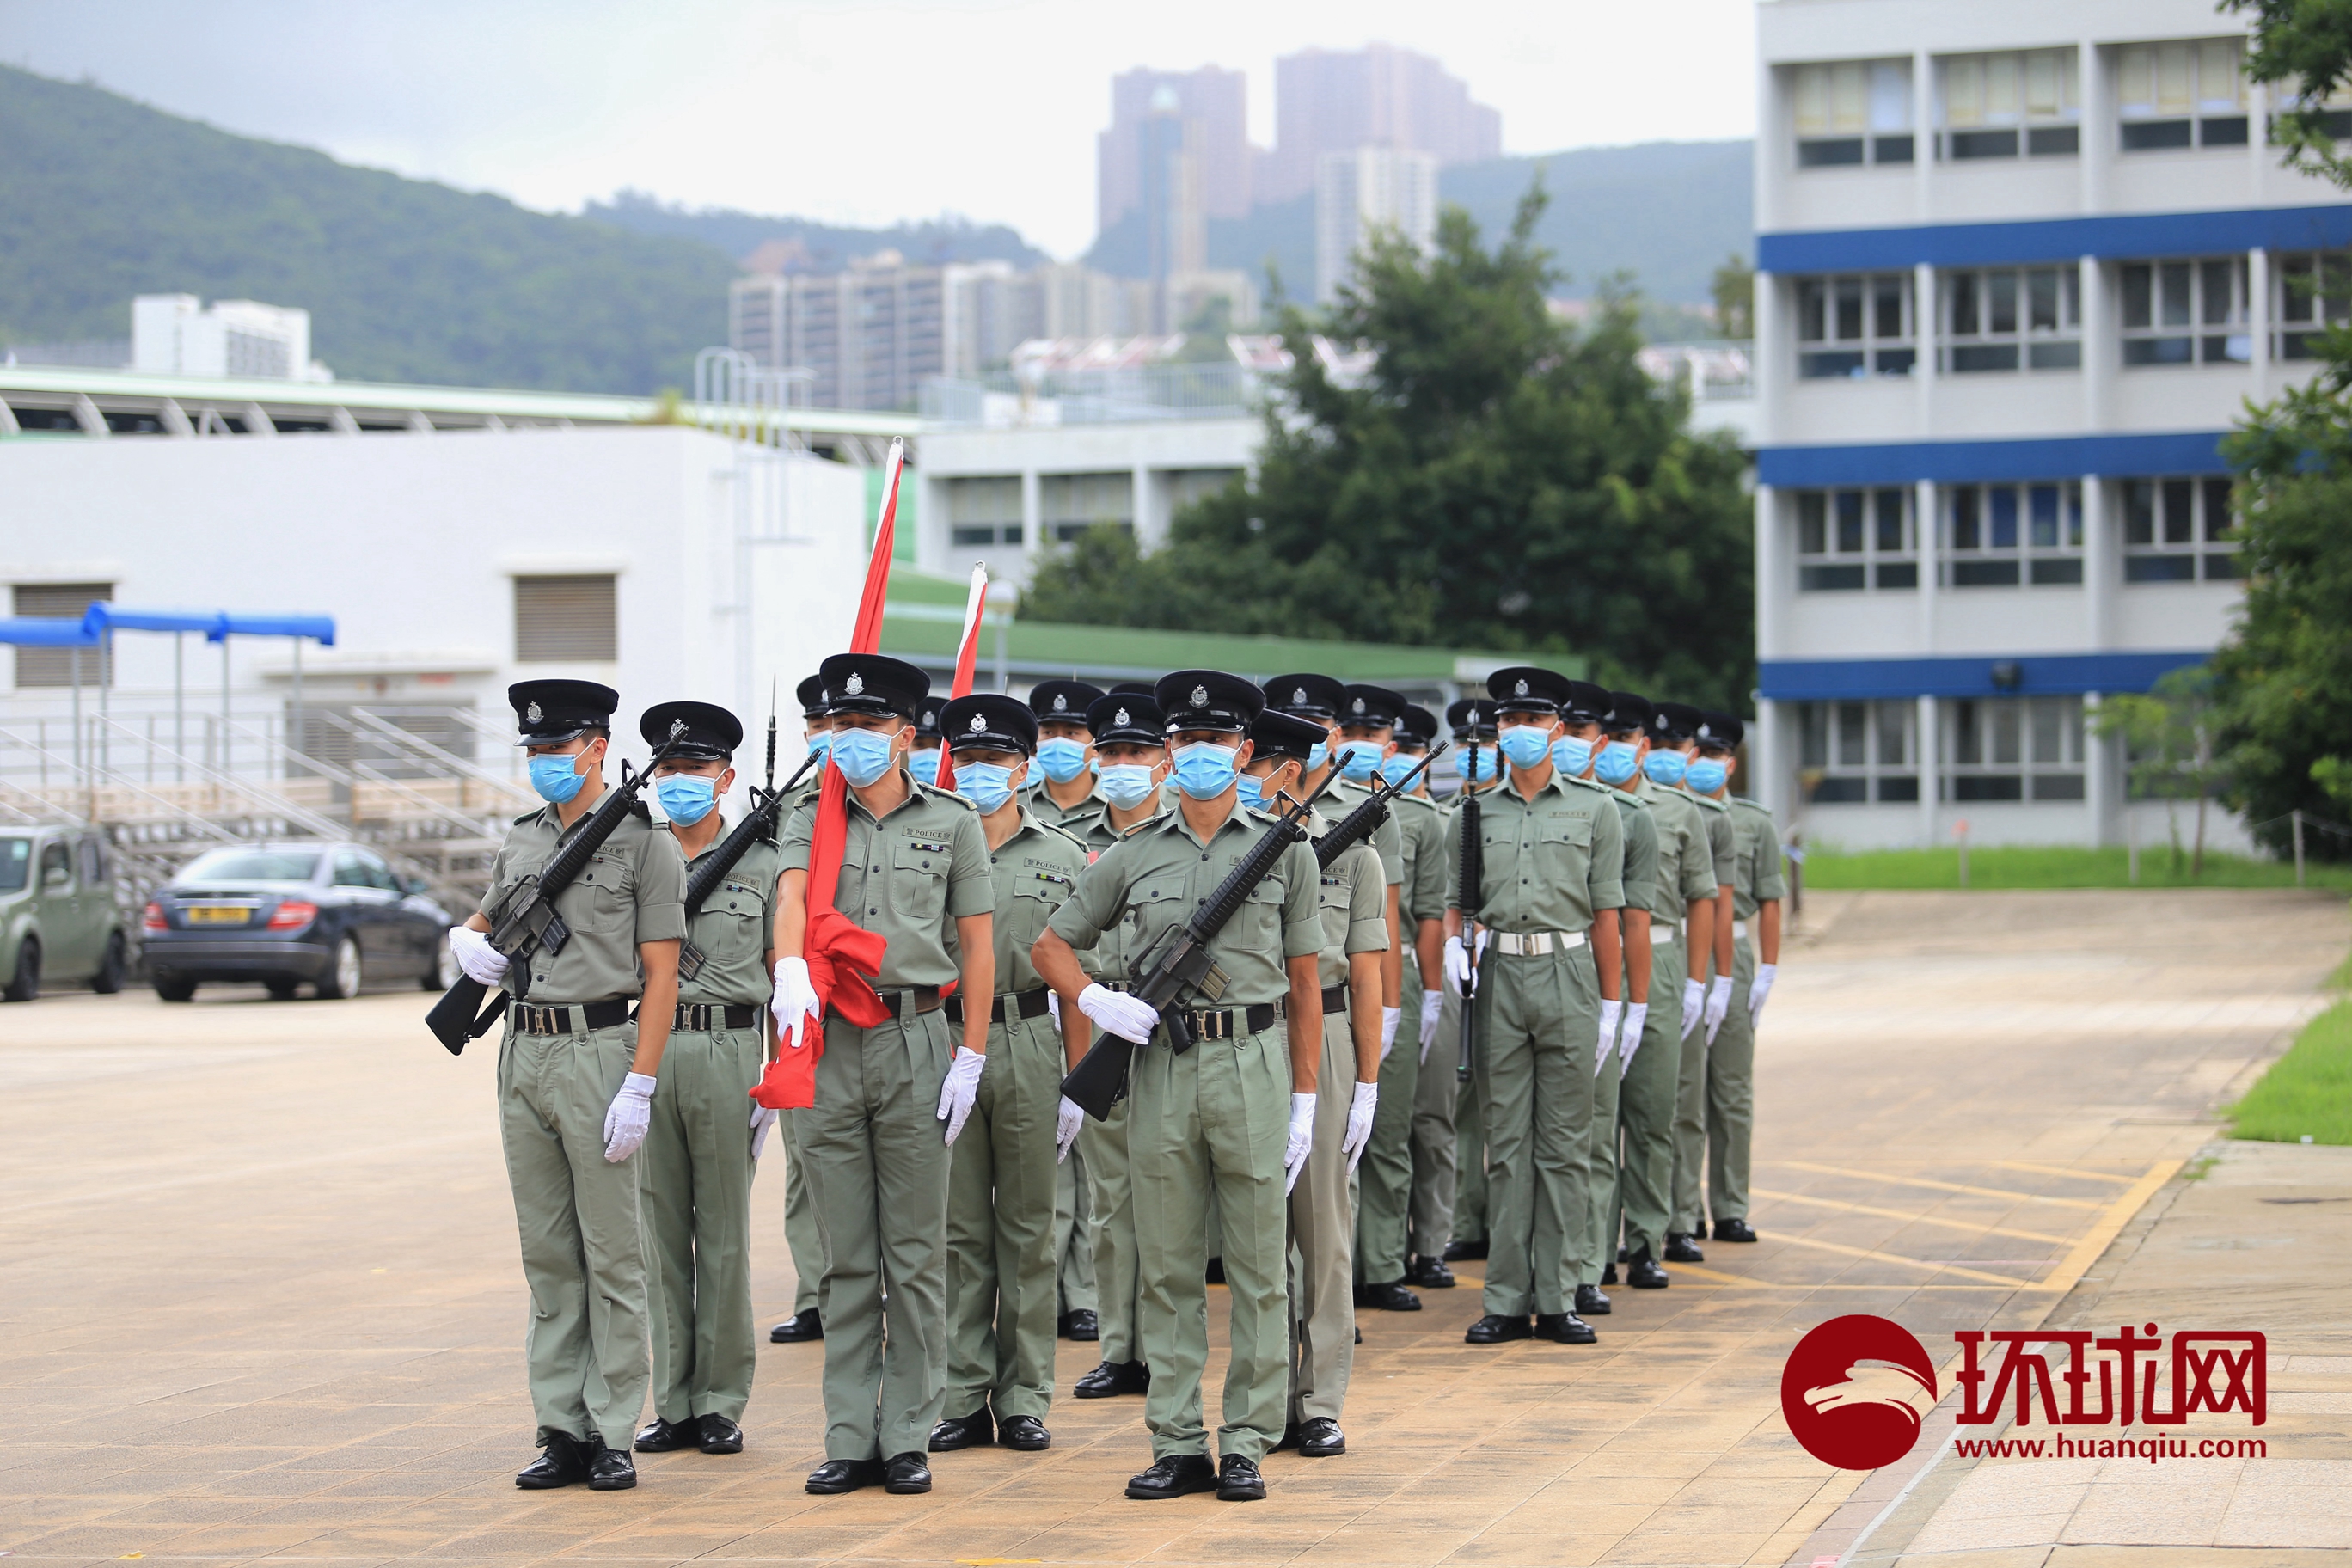 走进香港警察学院看中式步操训练:正步气势恢宏,枪法动作精准